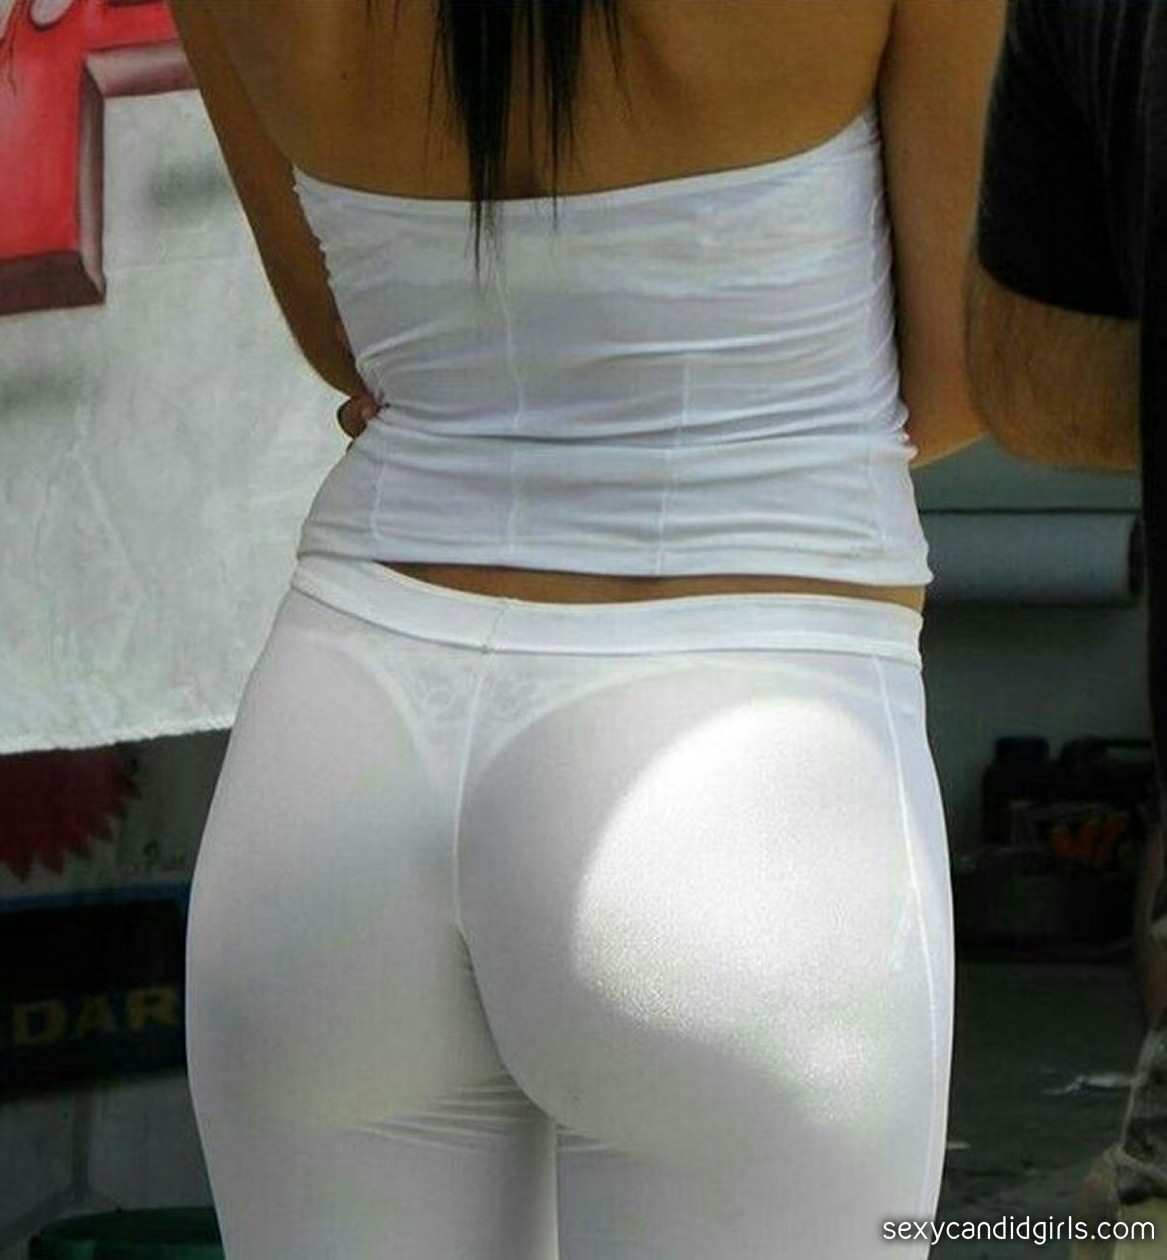 Promo Girl Candid Ass See Thru Yoga Pants image